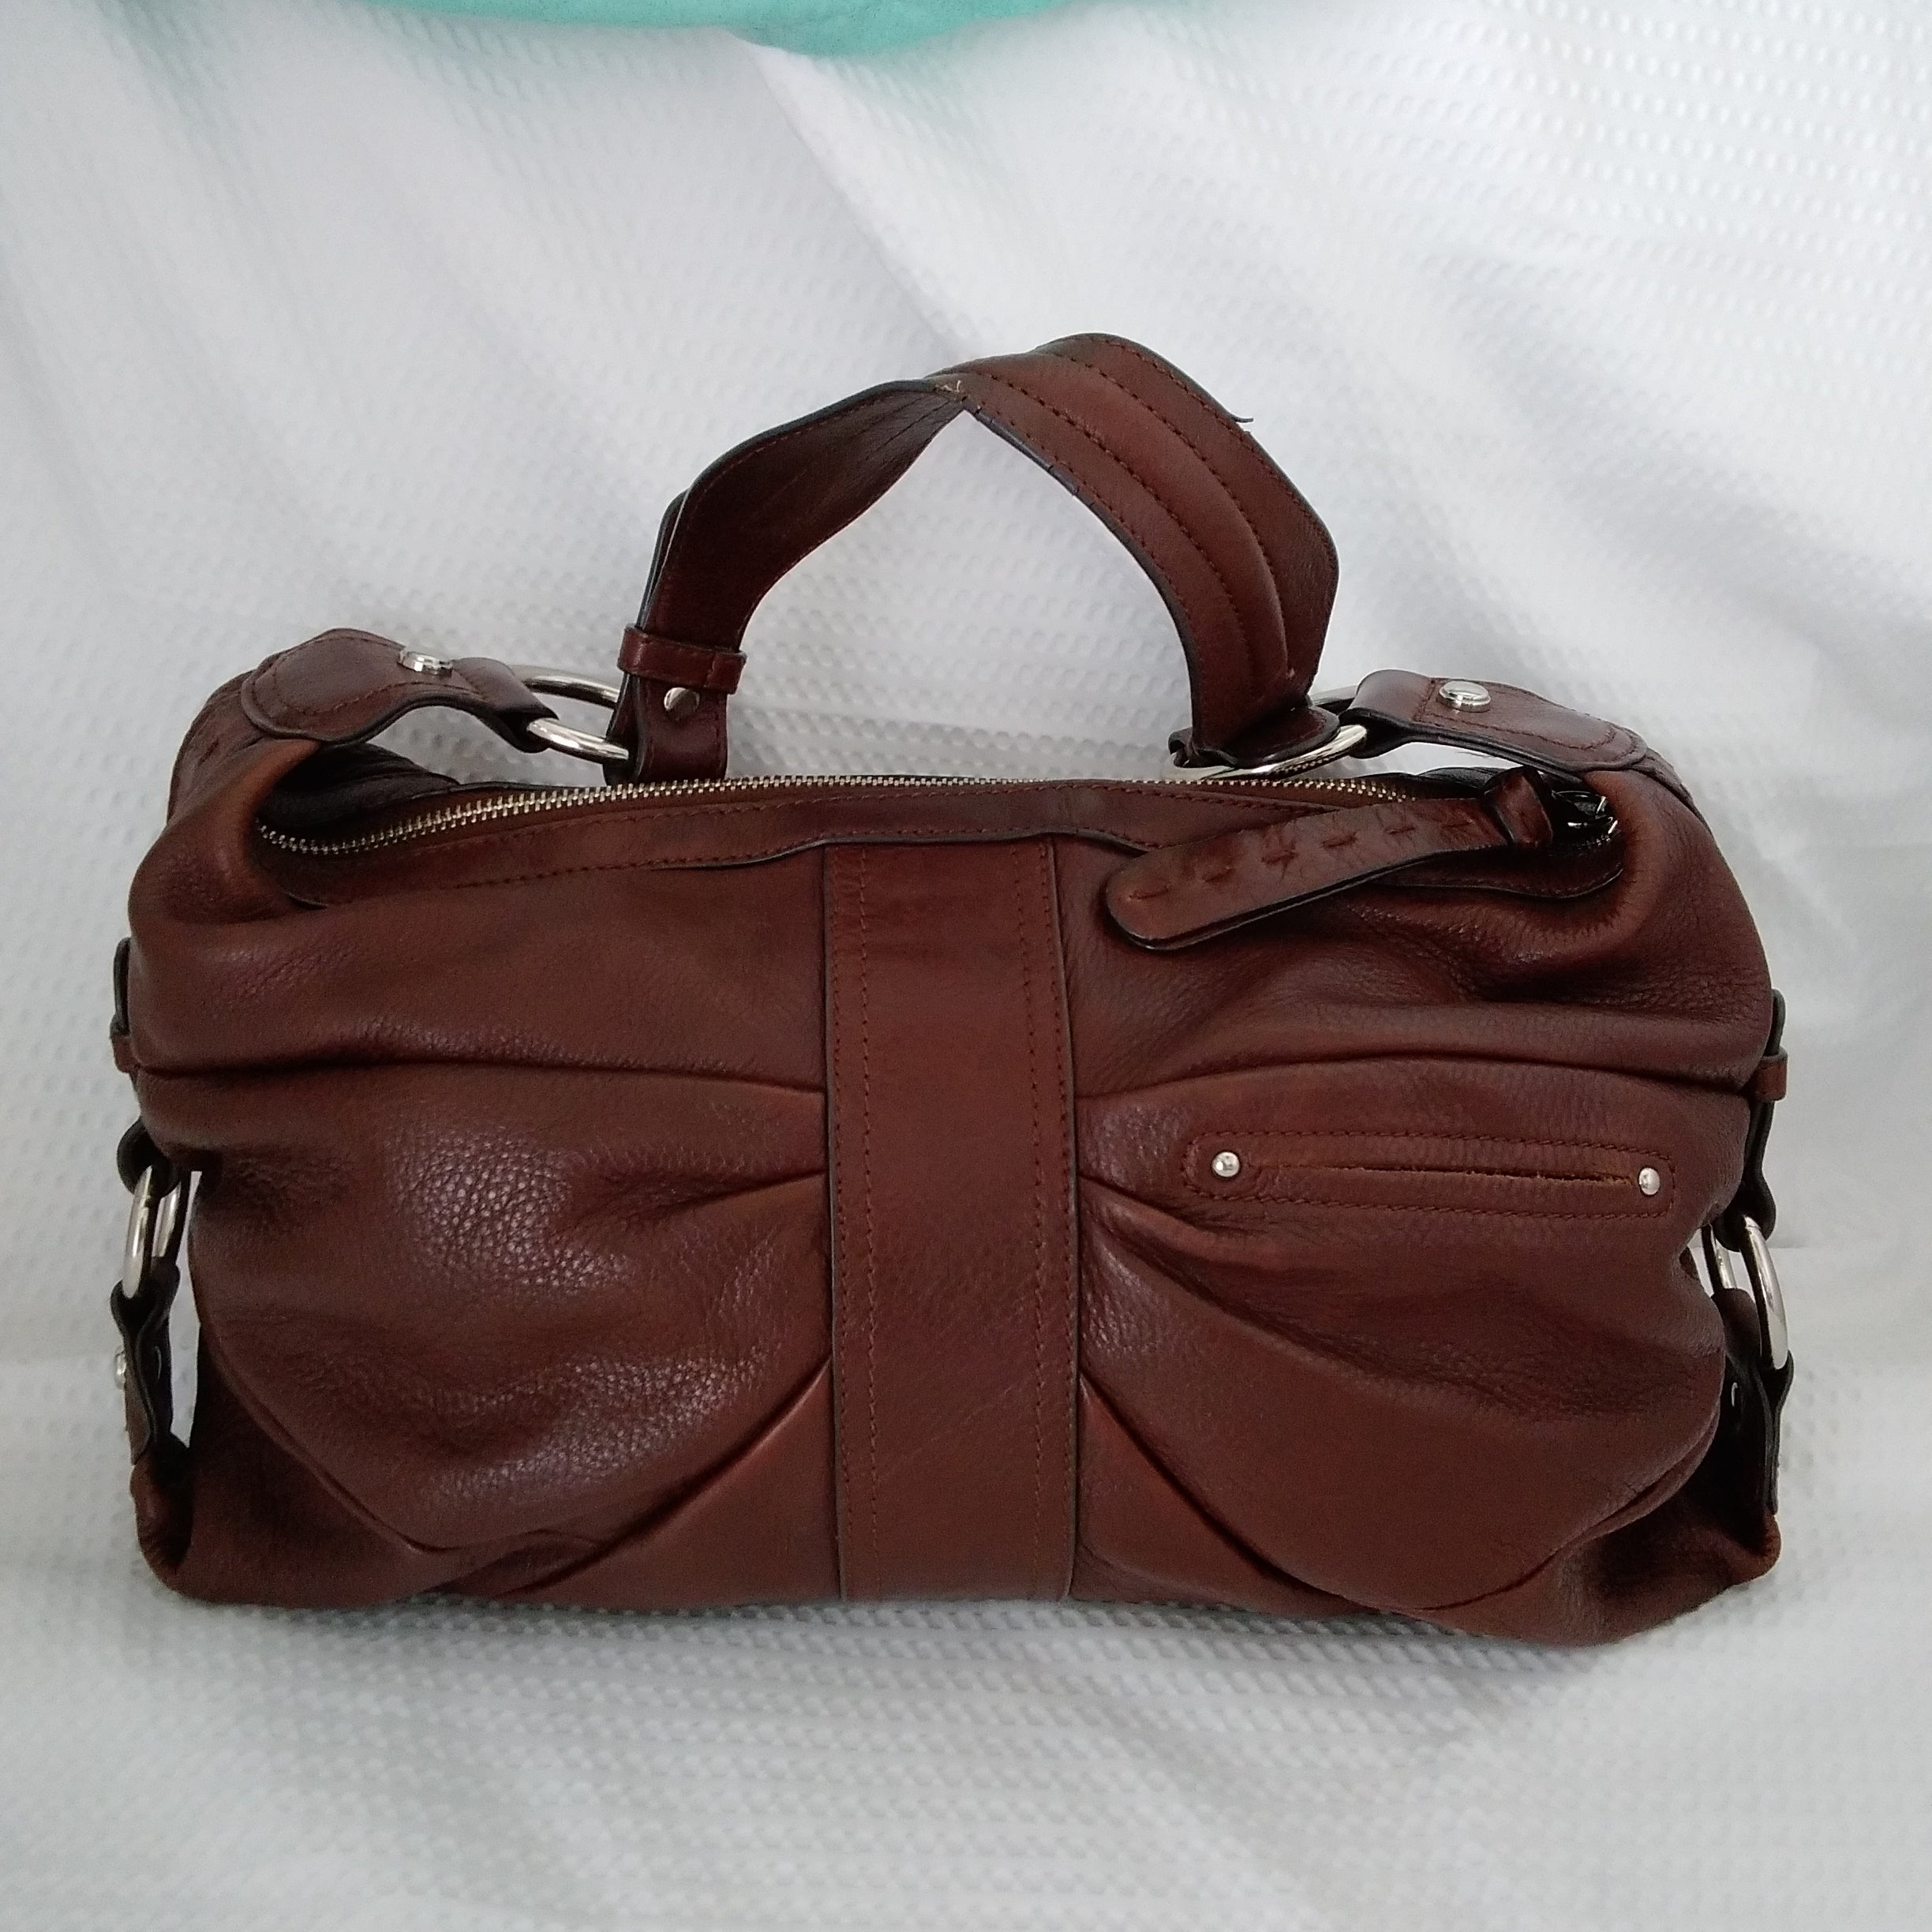 B Makowsky Solid Maroon Burgundy Leather Shoulder Bag One Size - 29% off |  ThredUp